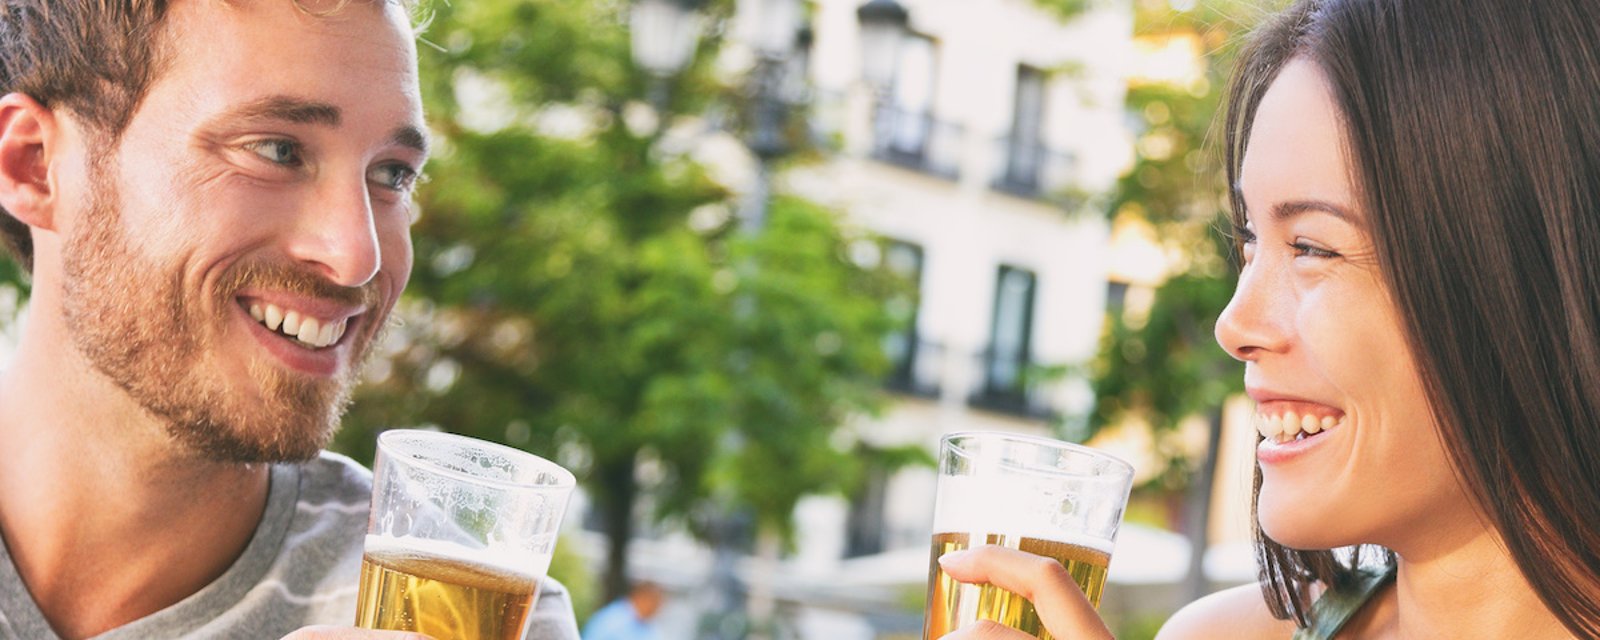 C'est vrai: l'alcool aide à mieux parler une langue étrangère